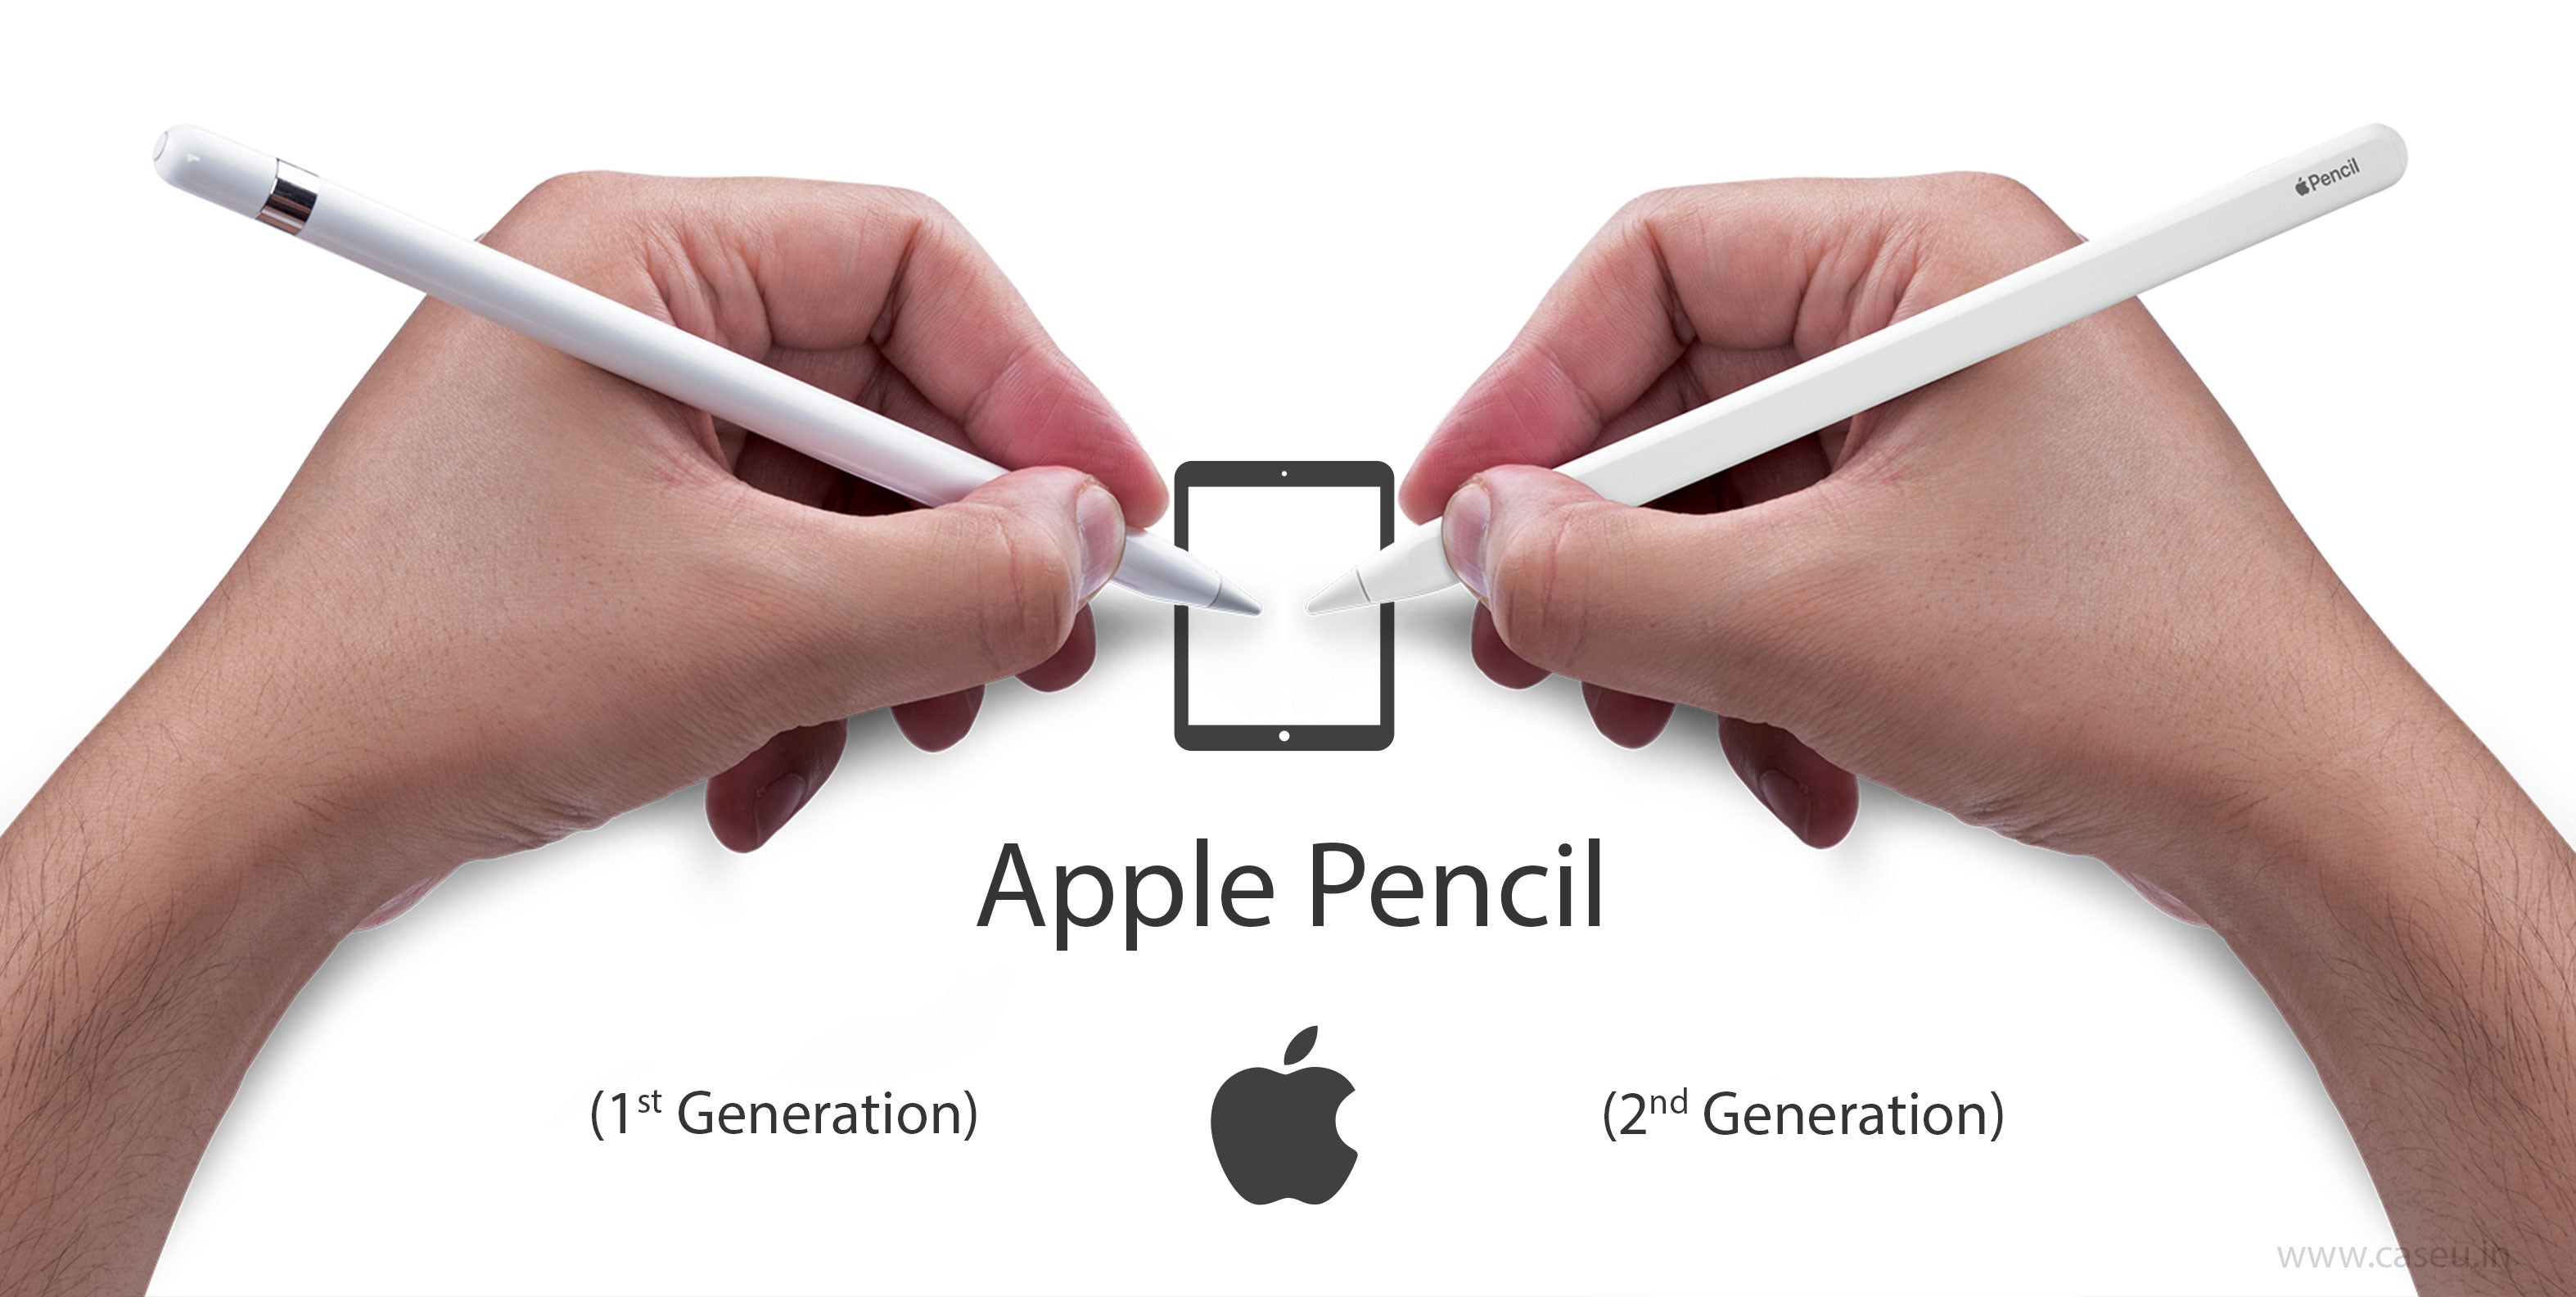 Apple stylus pen 2nd generation